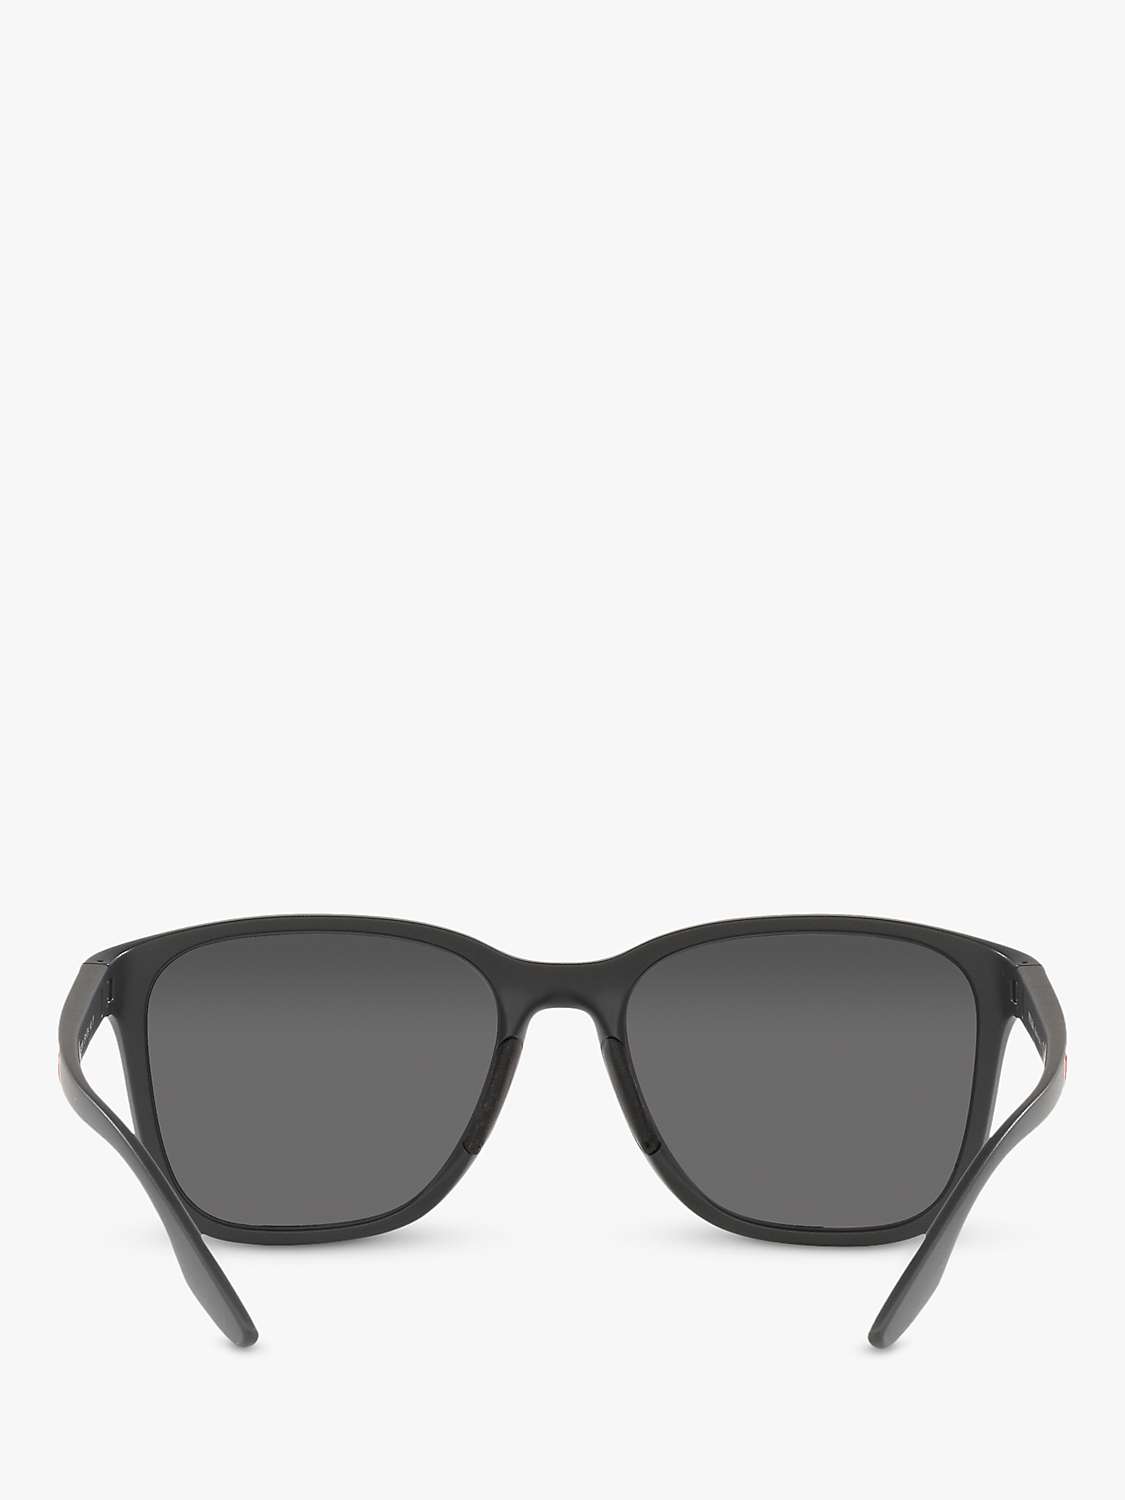 Buy Prada Linea Rossa PS 02WS Men's Pillow Polarised Sunglasses Online at johnlewis.com